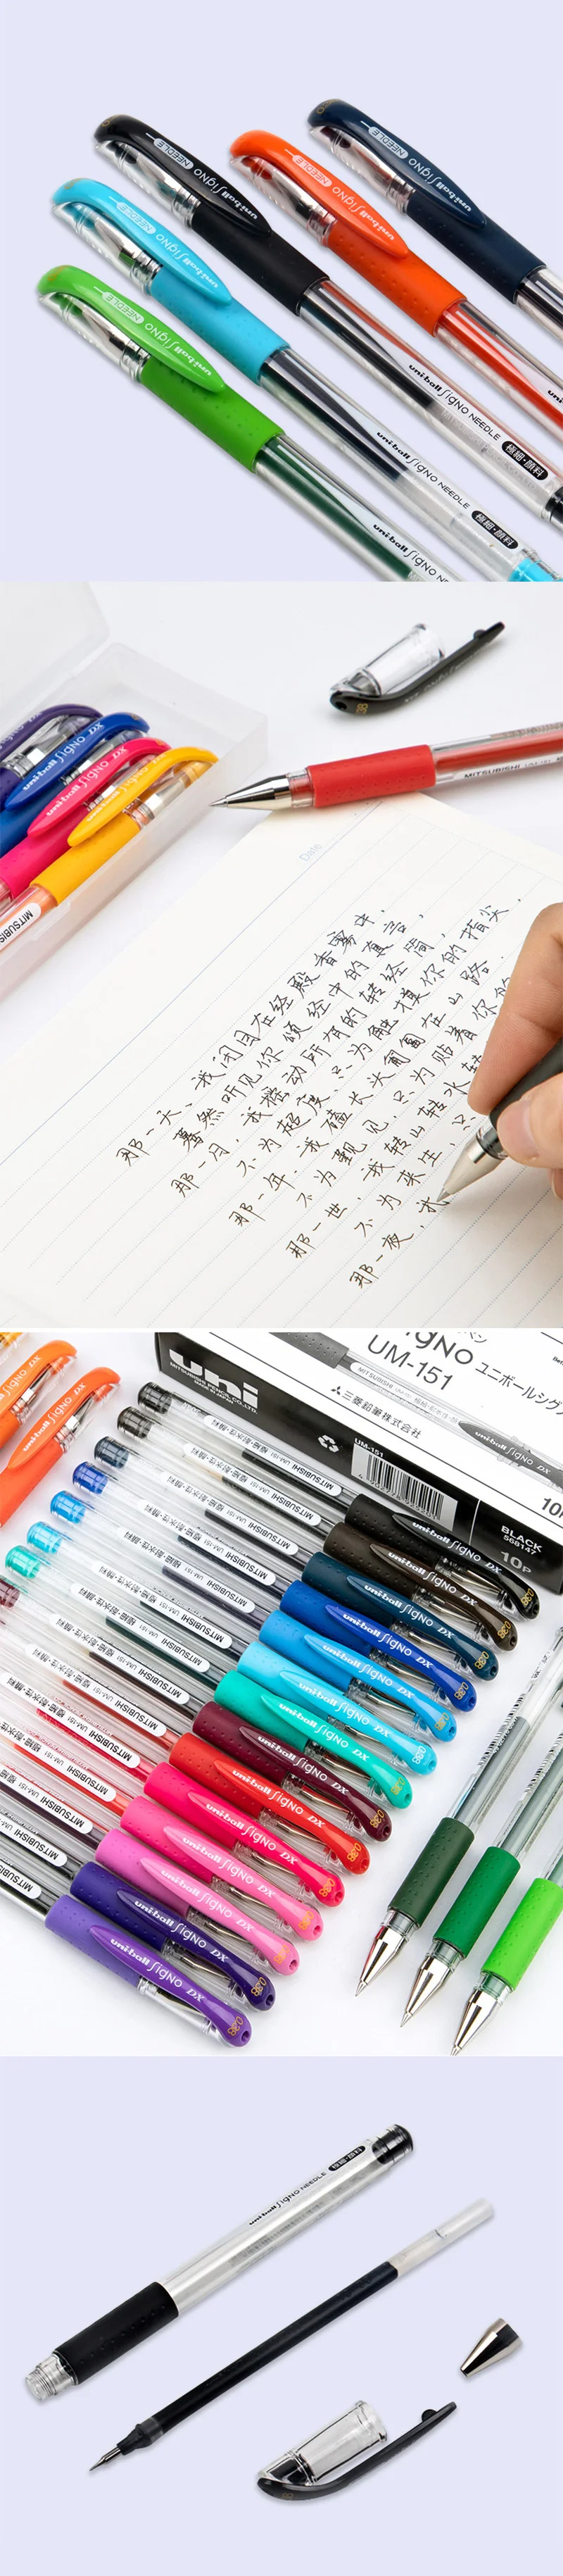 12 шт./партия Mitsubishi Uni Um-151 шариковая ручка с гелевыми чернилами 0,38 мм гелевые ручки 20 цветов выбор принадлежности для письма